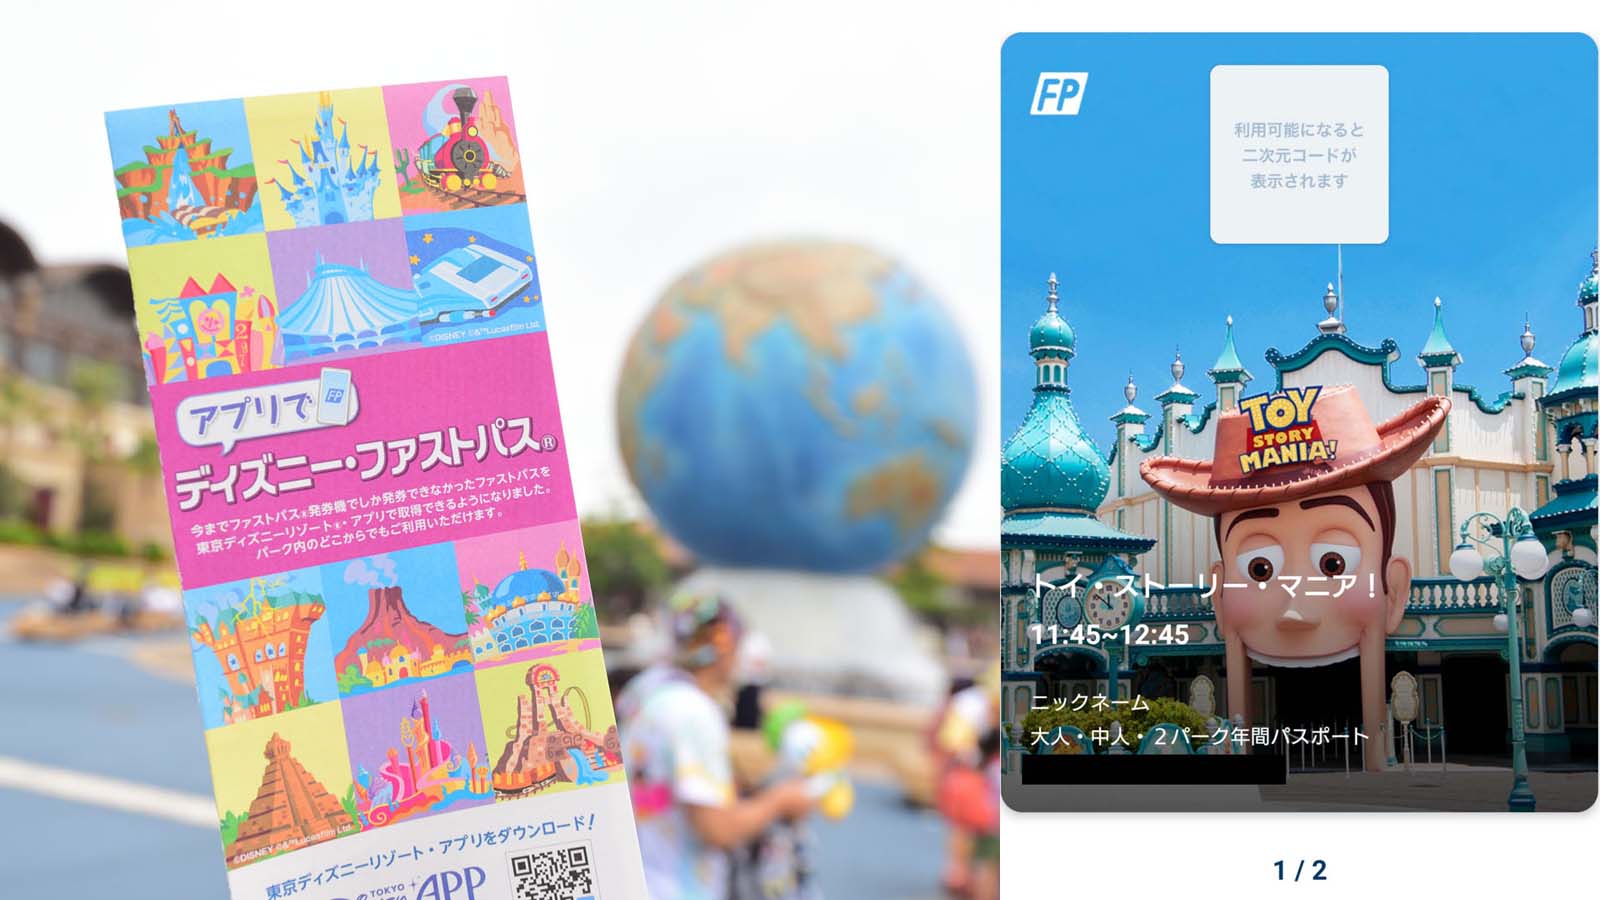 スマホアプリでディズニー ファストパス取得 実際の取り方 使い方レポ パークの周り方が劇的に変わる便利さ Disney Colors Blog